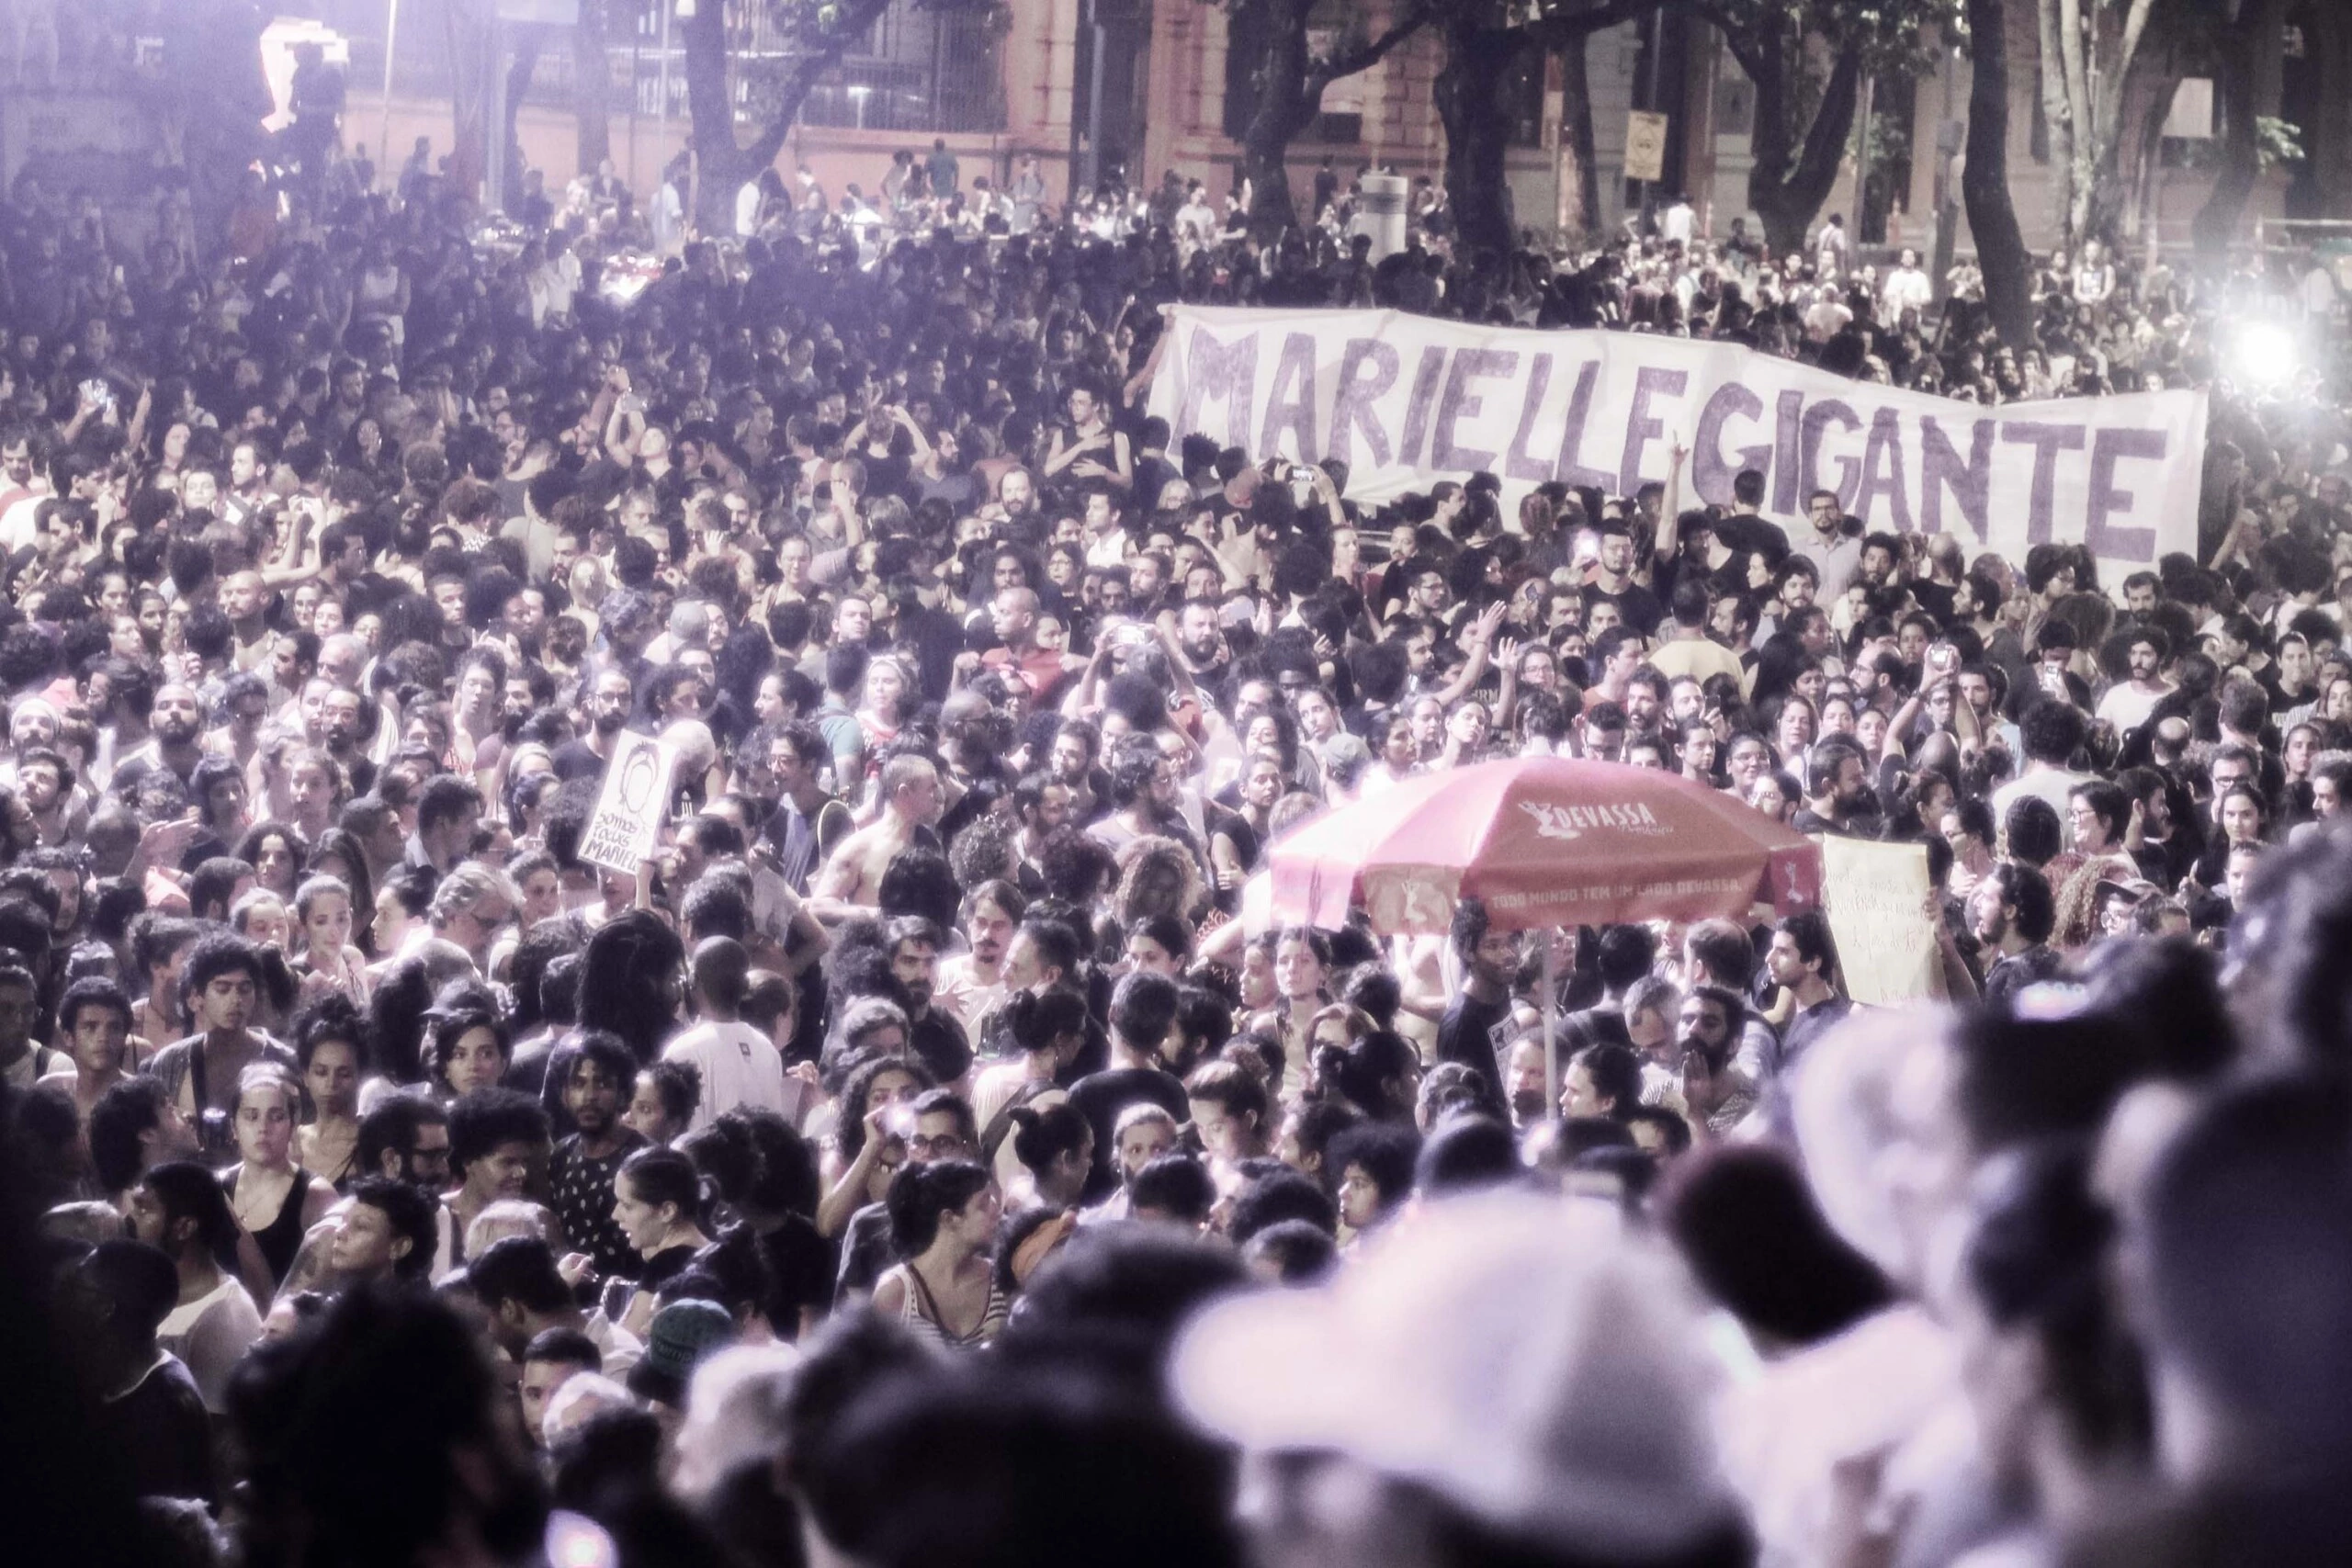 RIO DE JANEIRO,RJ,15.03.2018:PROTESTO-JUSTIÇA-MARIELLE-FRANCO - Protesto organizado por mulheres, exigindo justiça pela morte da vereadora Marielle Franco do PSOL, em frente a Assembléia Legislativa do Estado do Rio de Janeiro (Alerj), no Rio de Janeiro (RJ), nesta quinta-feira (15). (Foto: Julia Gabriela/Futura Press/Folhapress)